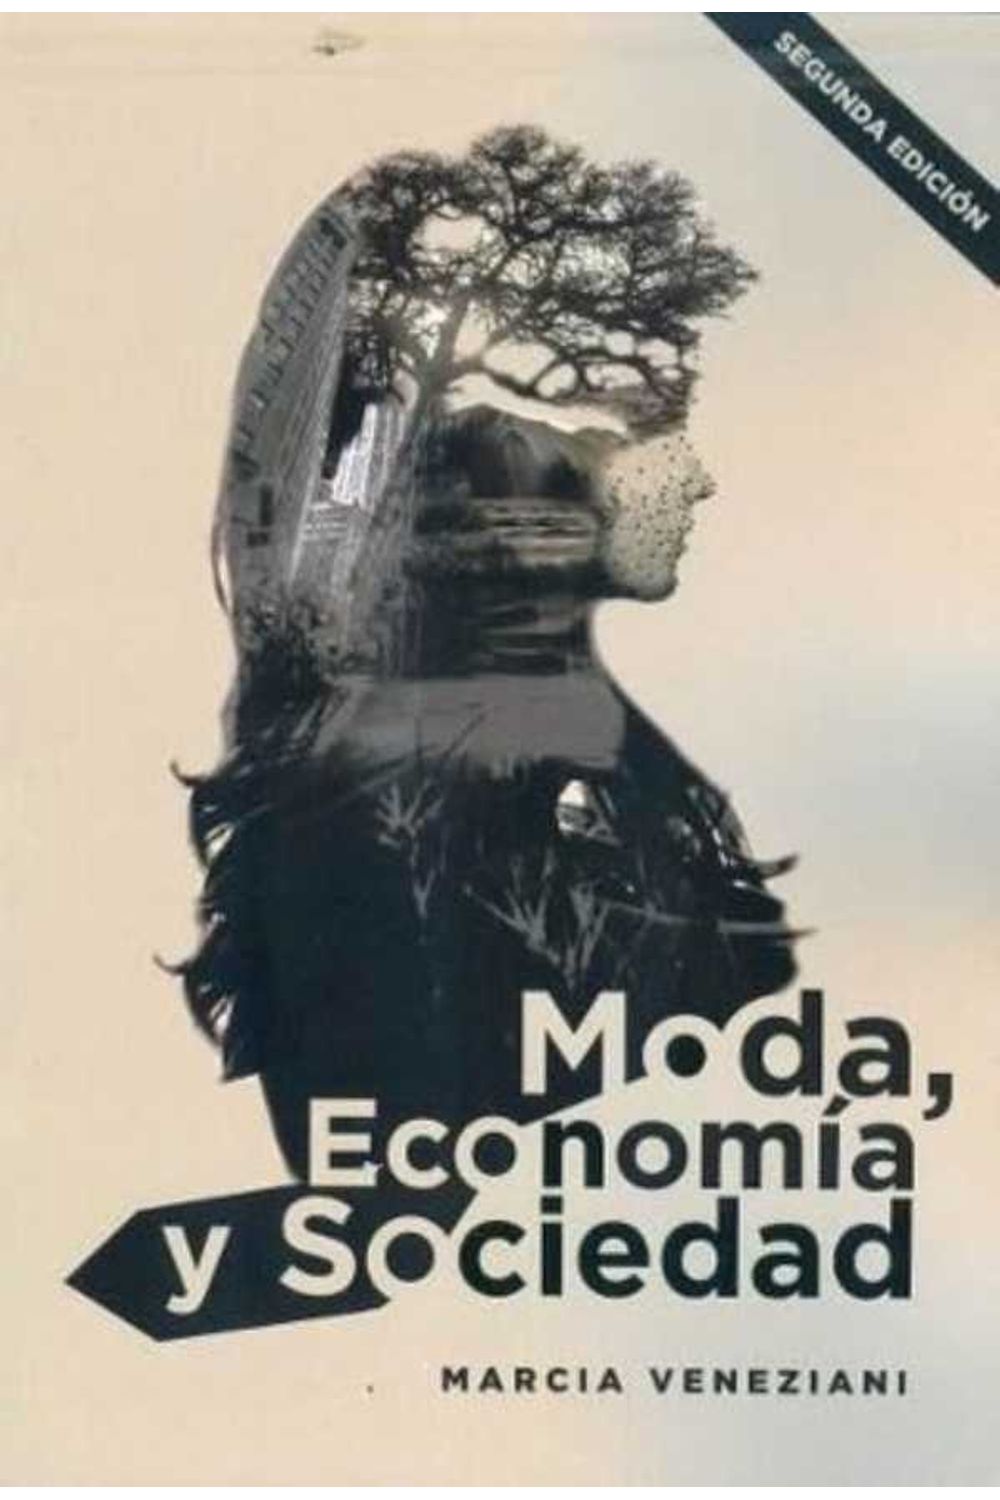 bw-moda-economiacutea-y-sociedad-nobuko-9781643603421